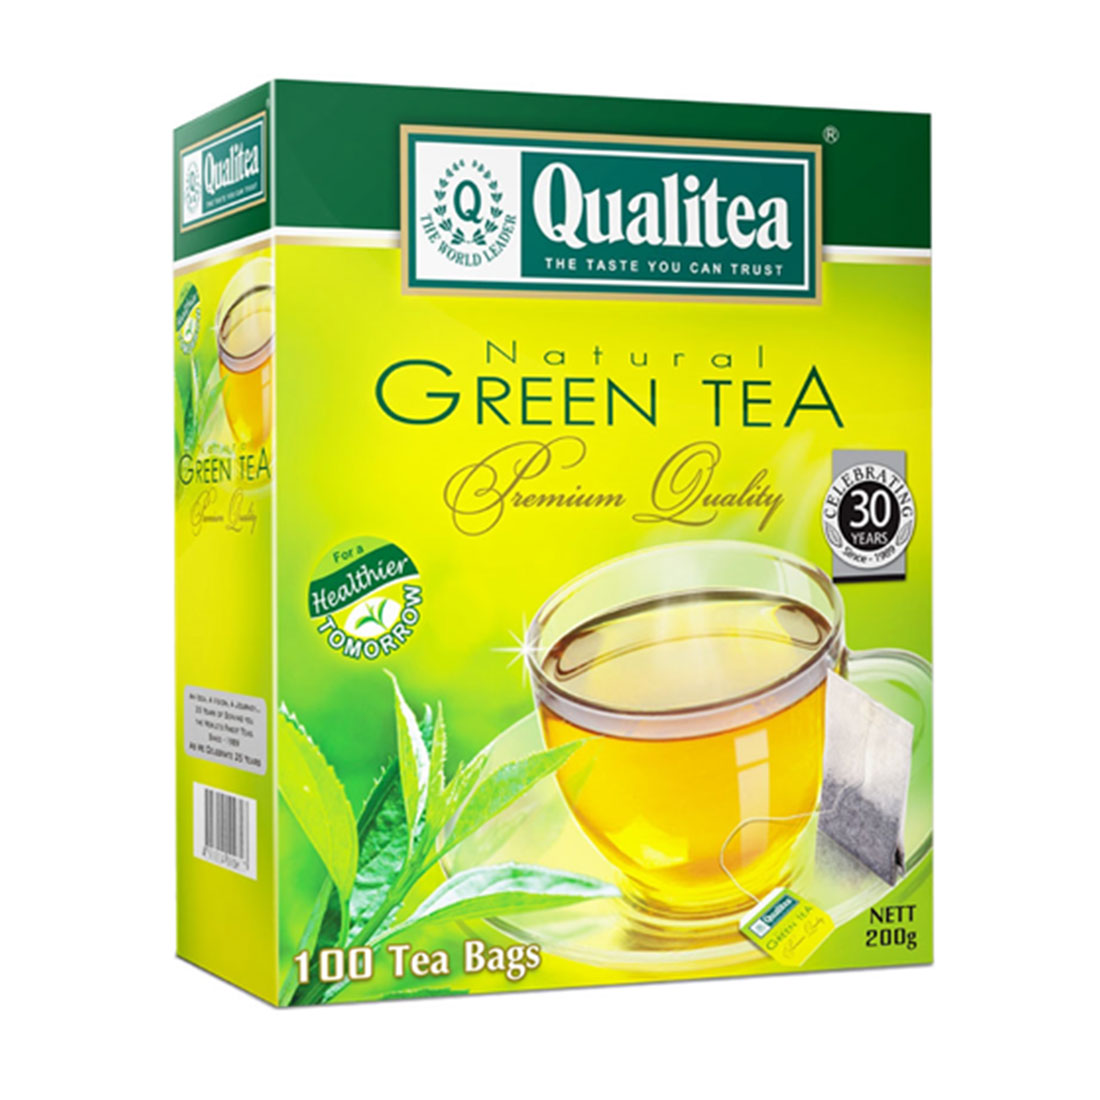 QUALITEA - Natural Green Tea 100 Tea Bag Pack